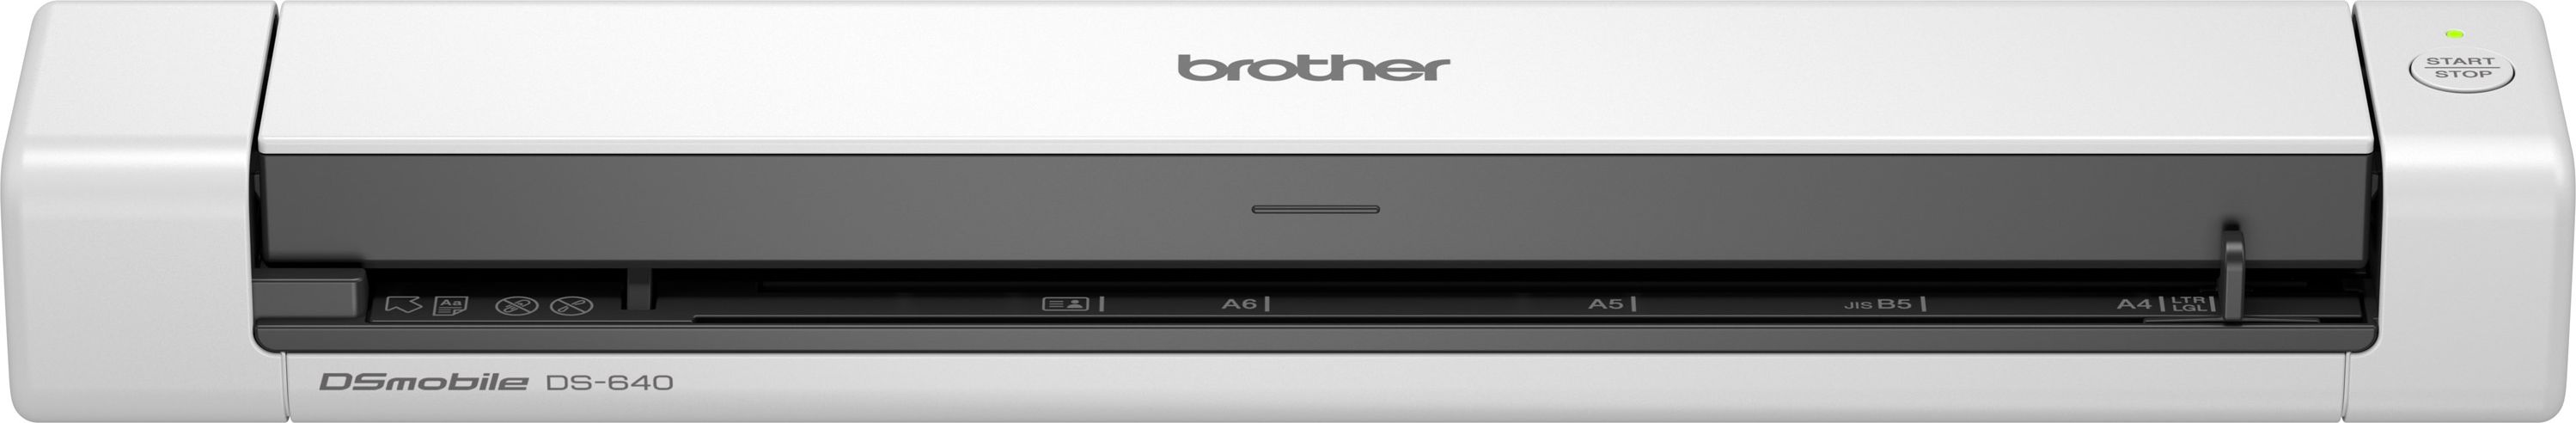 Brother DSmobile Portable Scanner - White, White